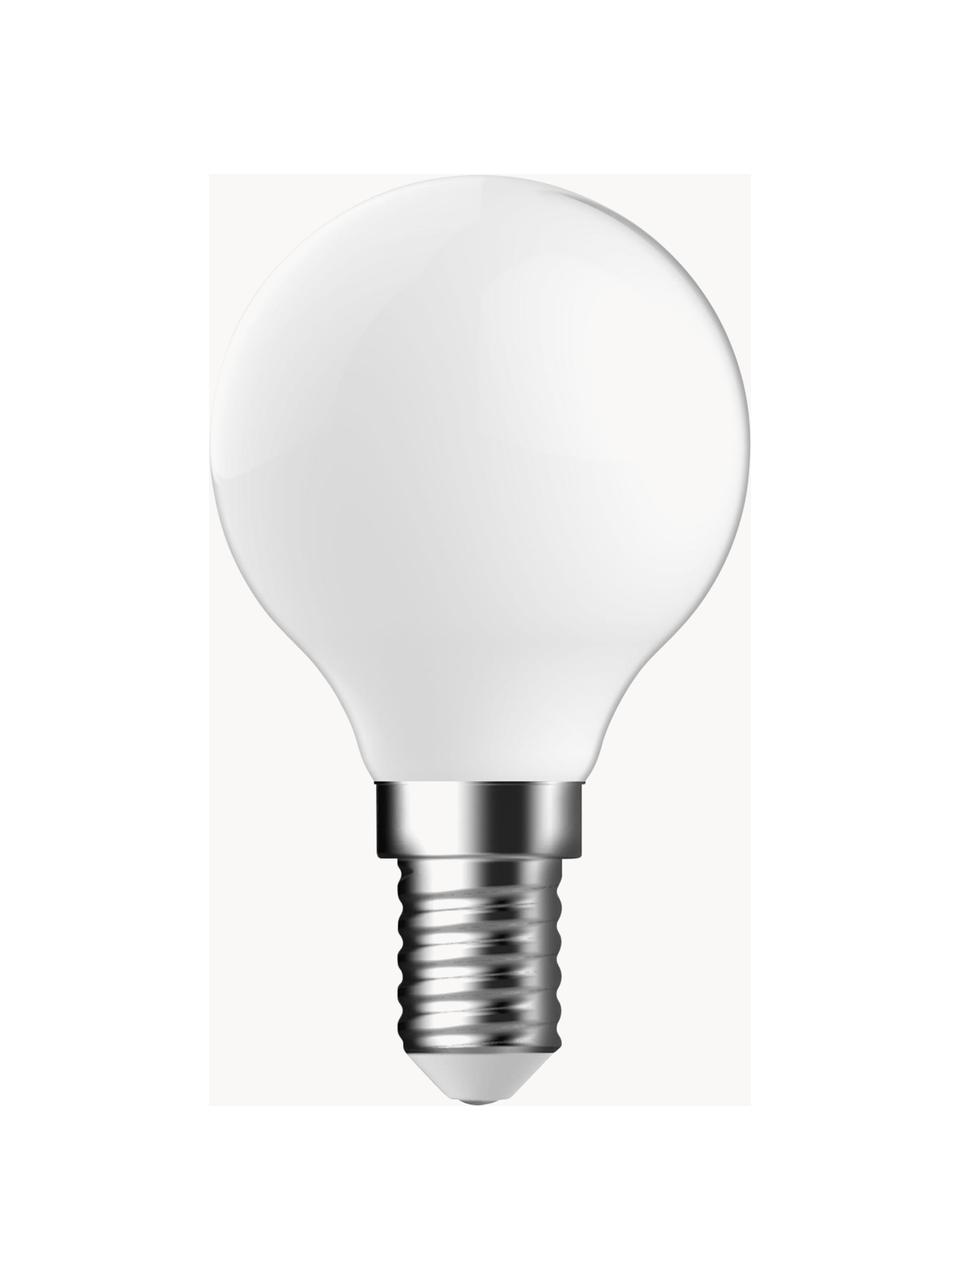 E14 žiarovka, hrejivá biela, 1 ks, Biela, Ø 5 x V 8 cm